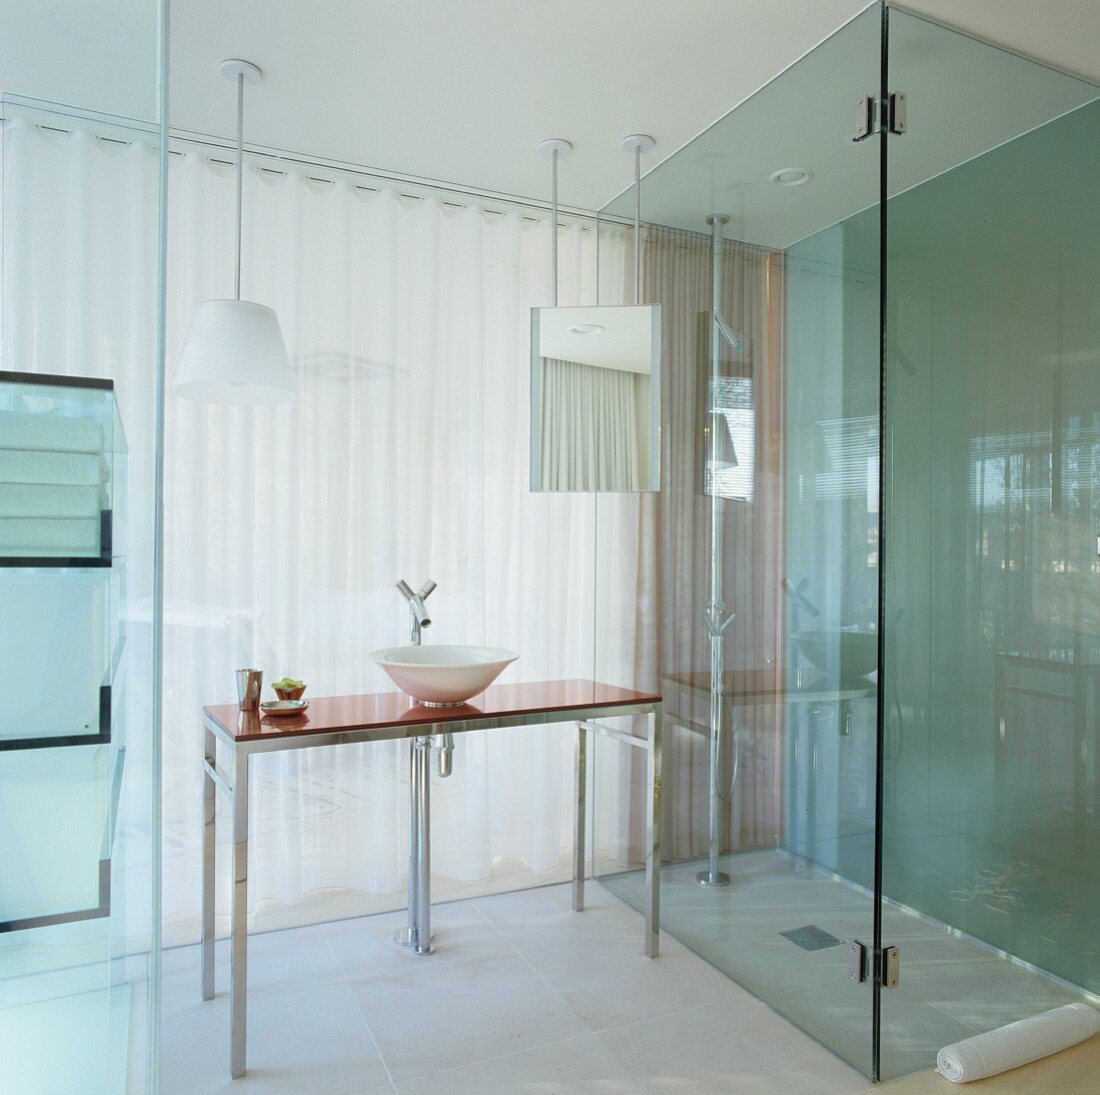 Gläsernes Bad Ensuite im Hotel - mit bodengleicher Dusche und modernem Waschtisch mit Philippe Starck Armatur vor transluzentem Vorhang zum Schlafzimmer